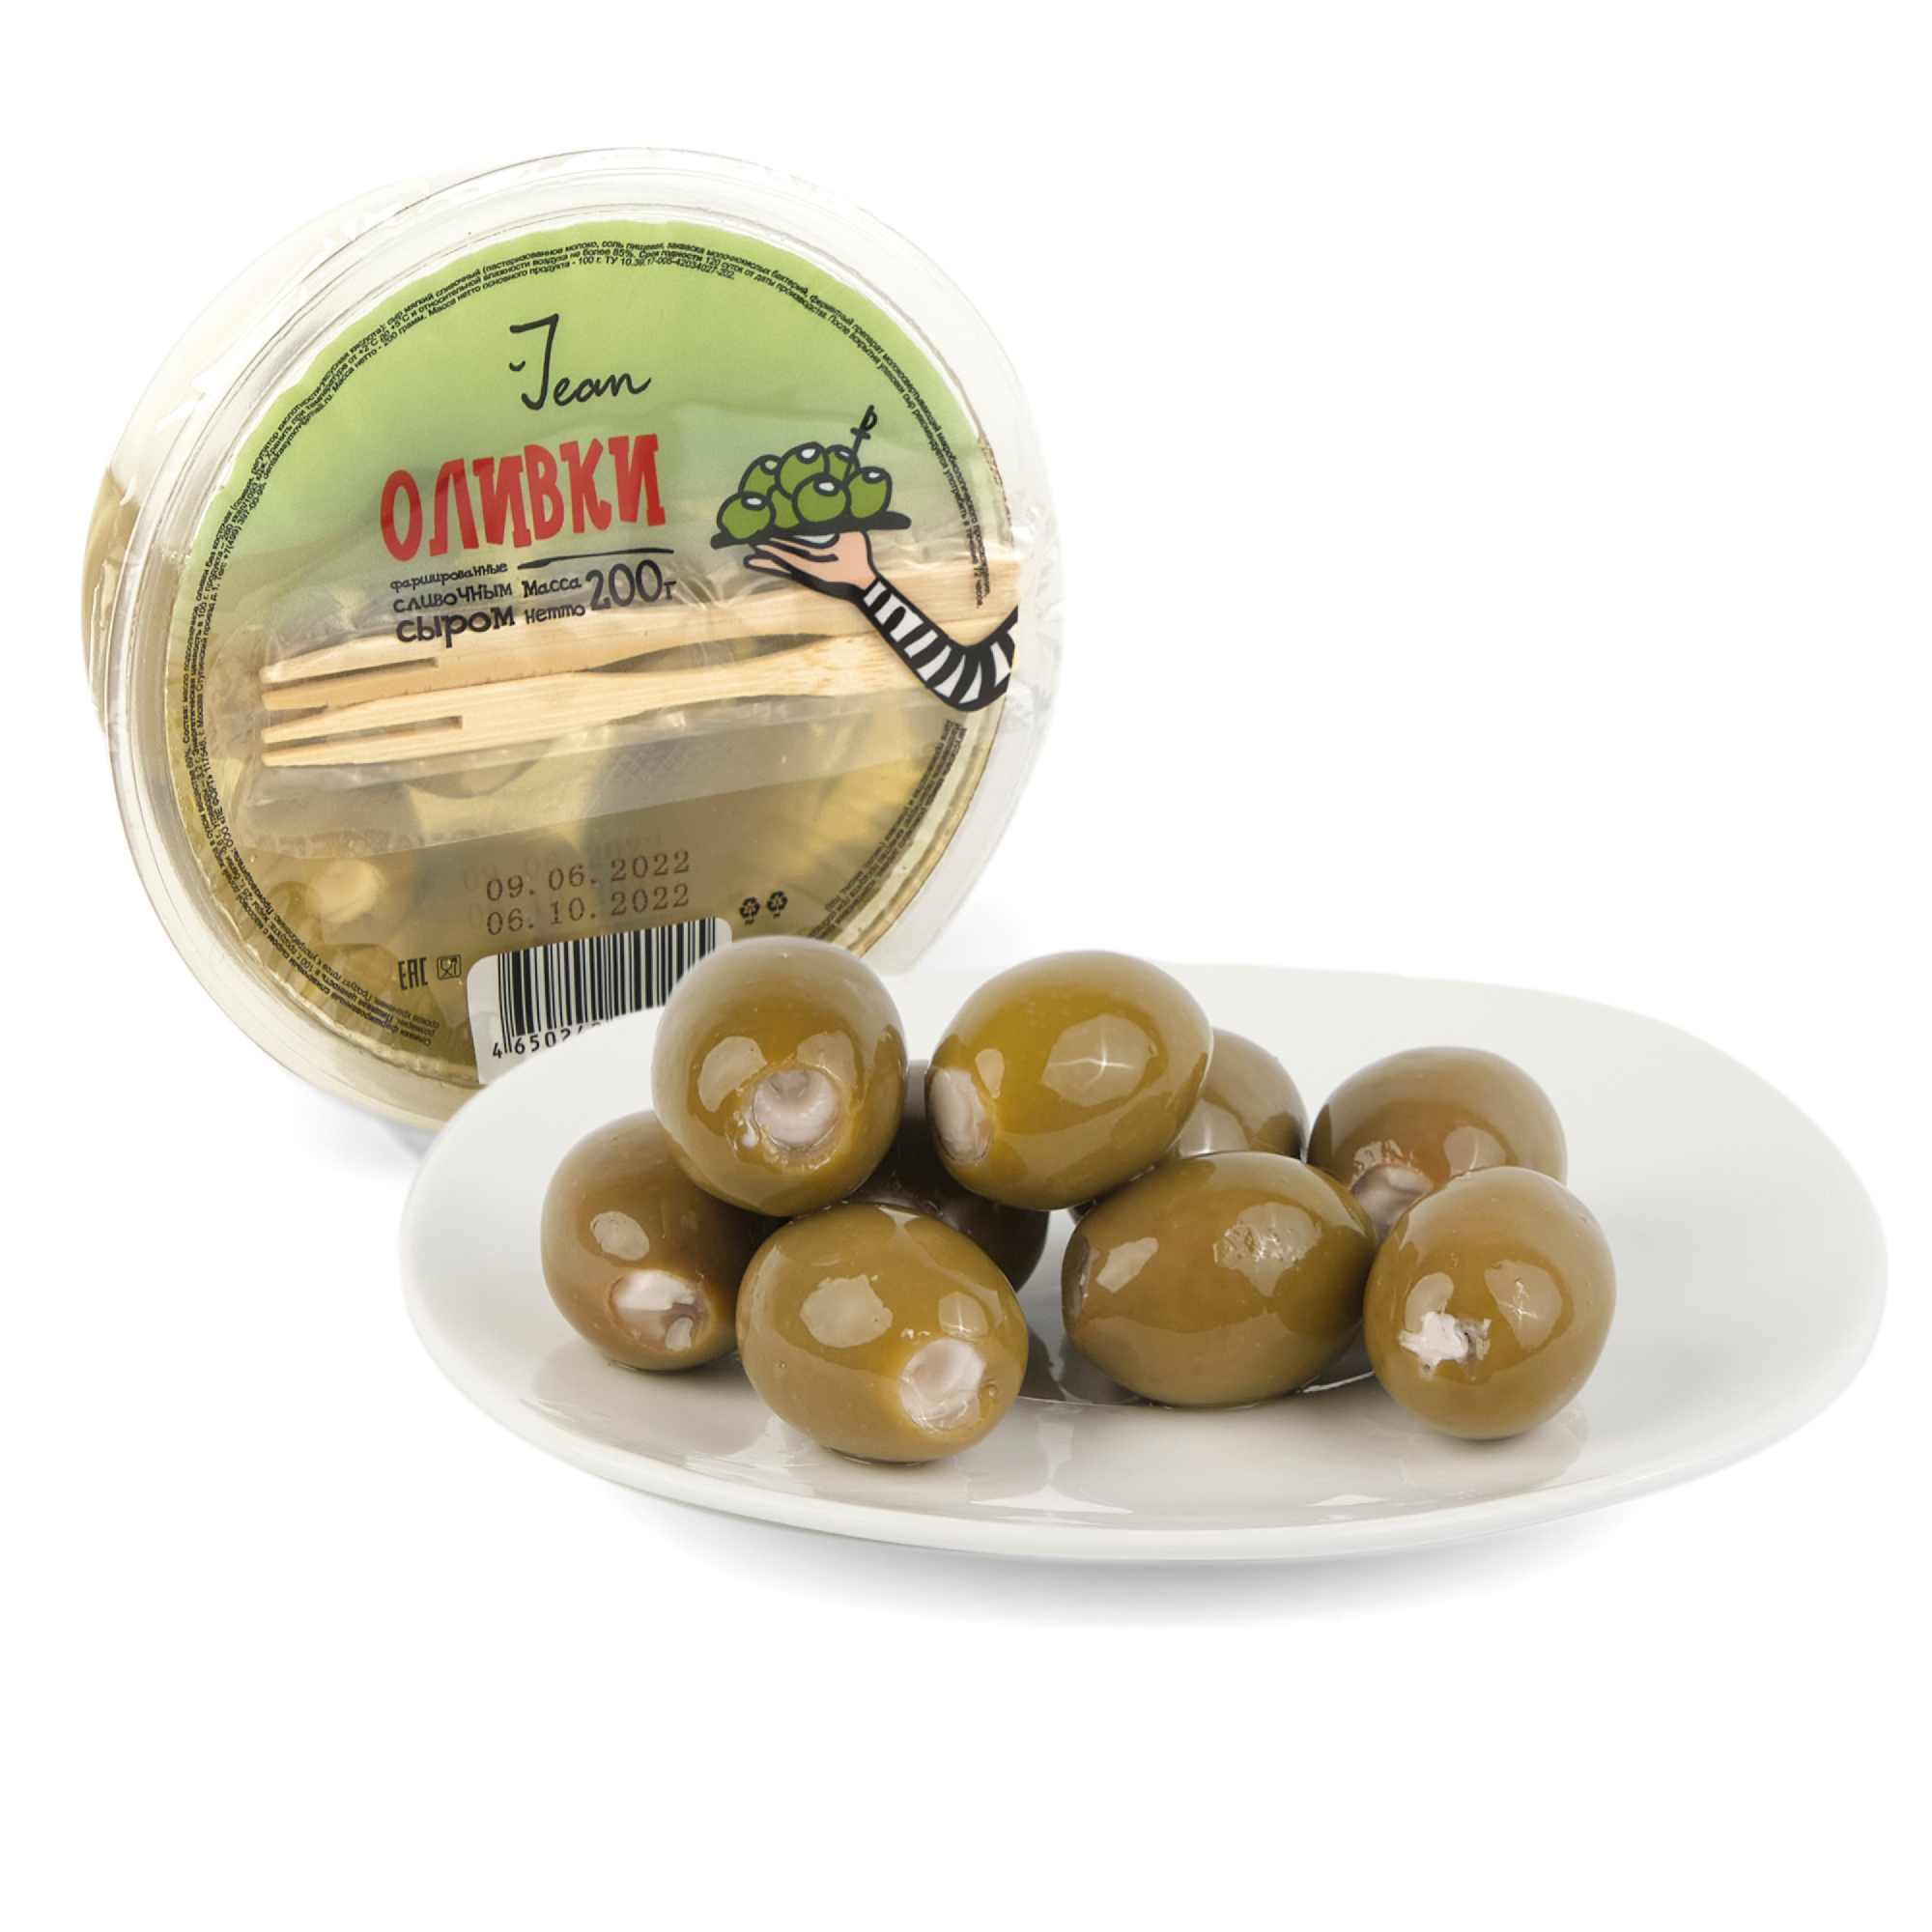 Фаршированные оливки Jean сливочным сыром, 200 г перчики острые ellenika фаршированные сливочным сыром 130 г